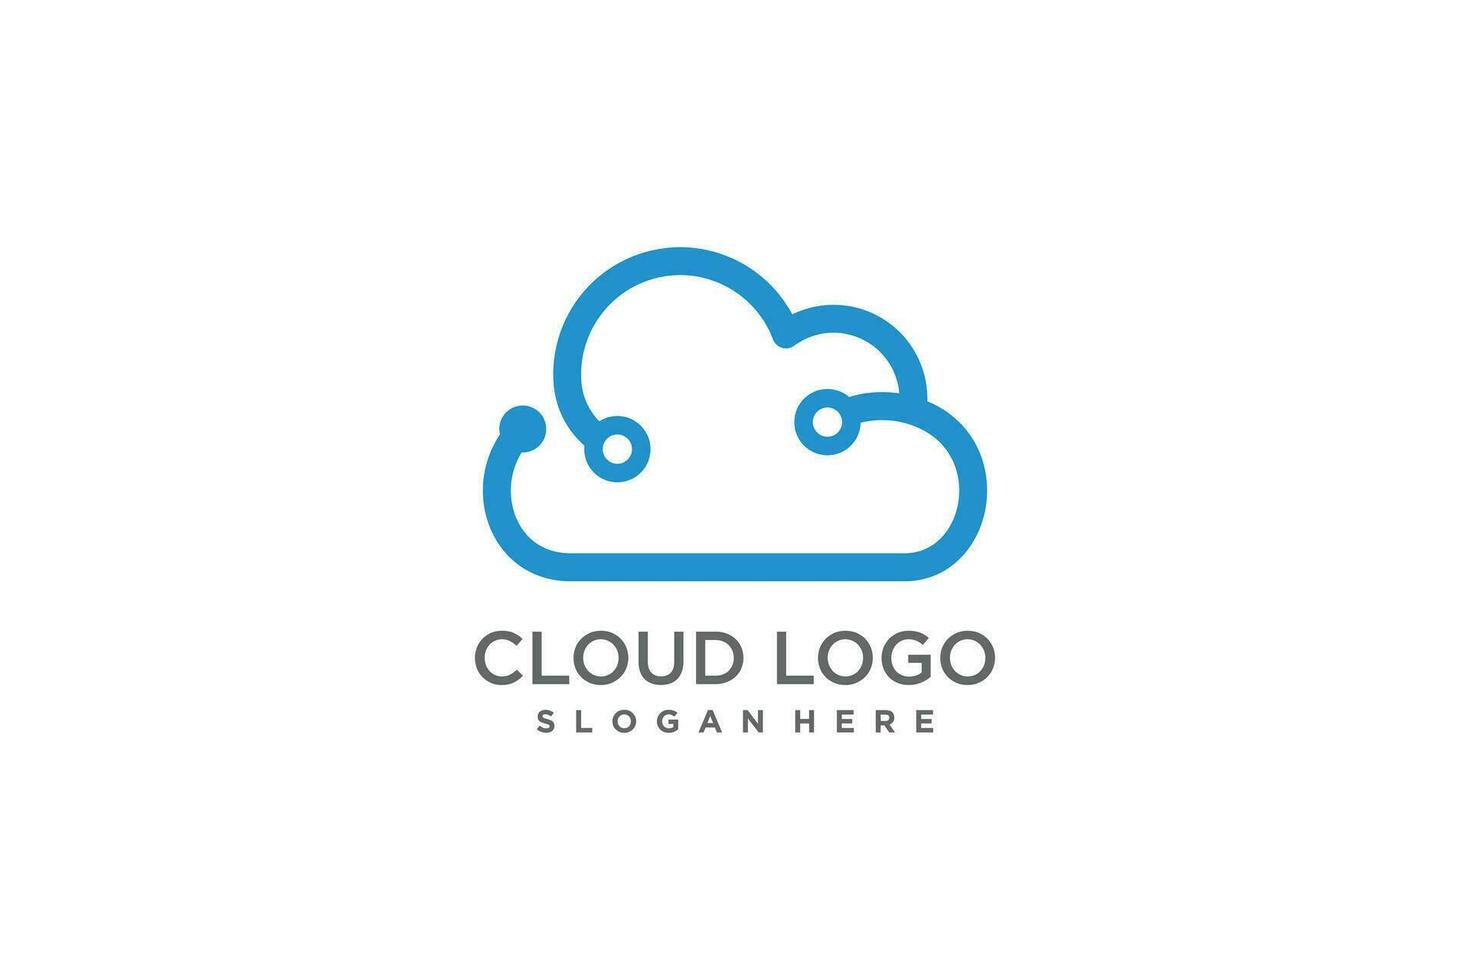 Cloud logo design with modern creative concept idea vector